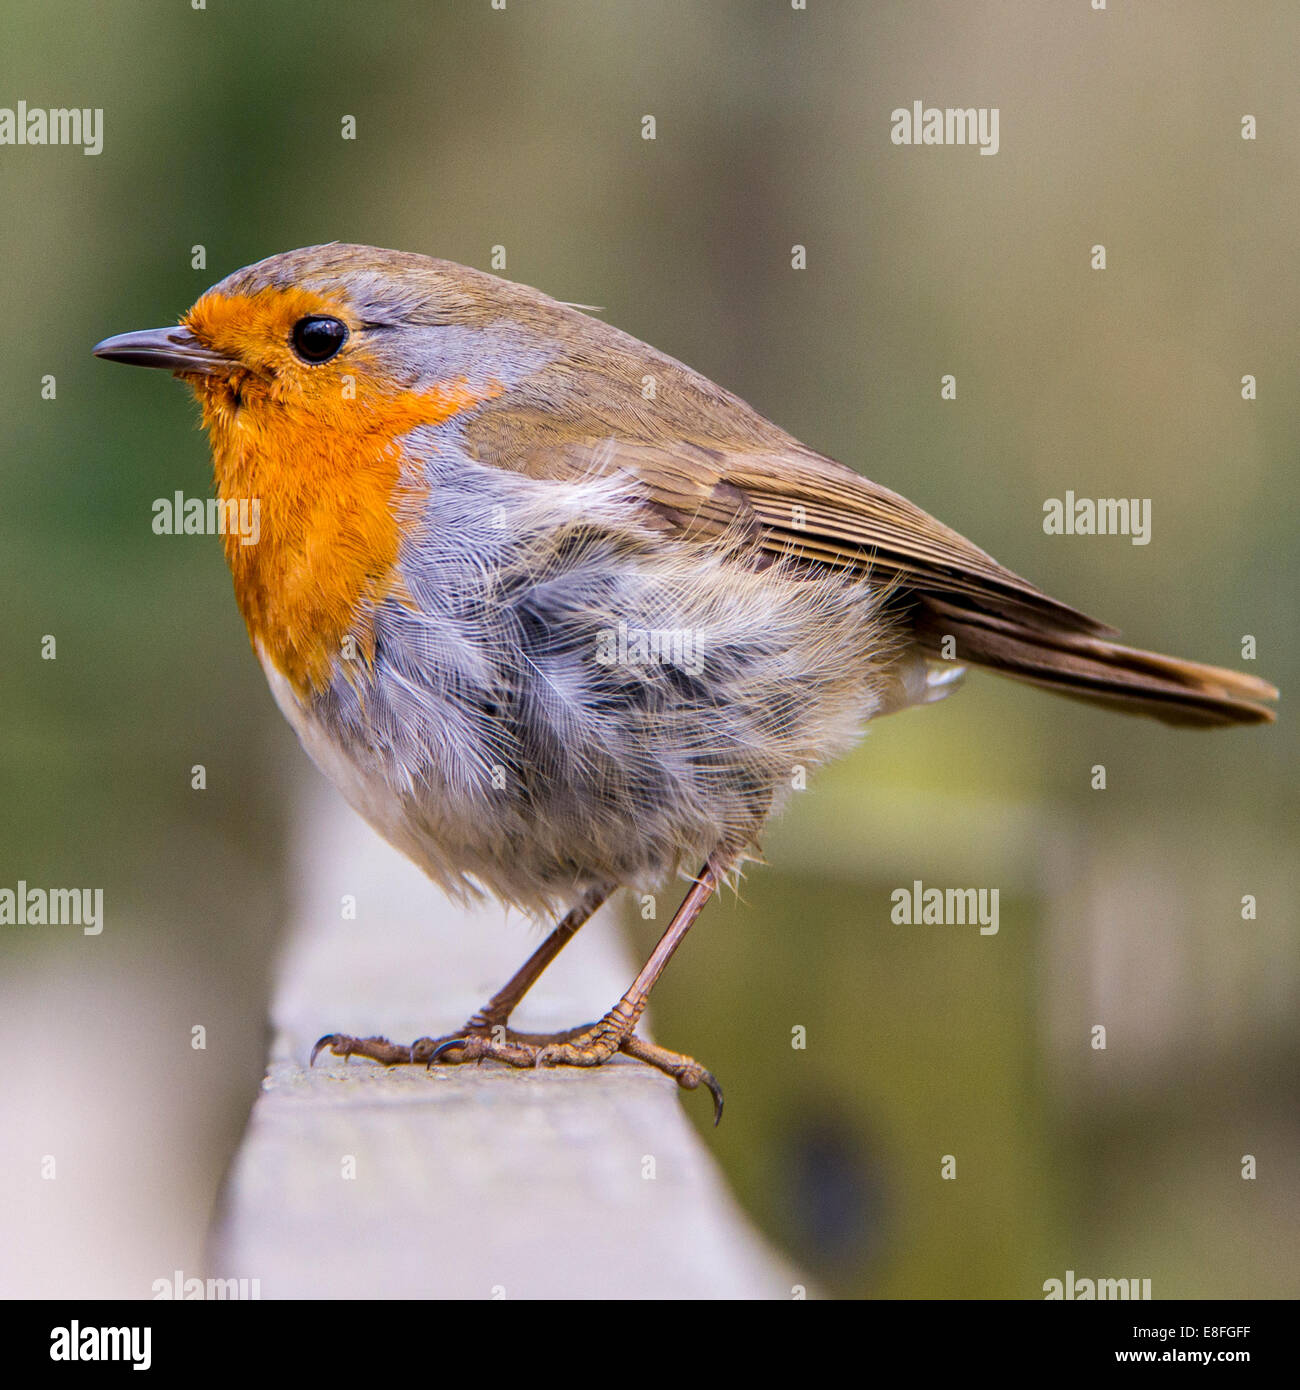 Close up of red robin oiseau posé sur fence Banque D'Images